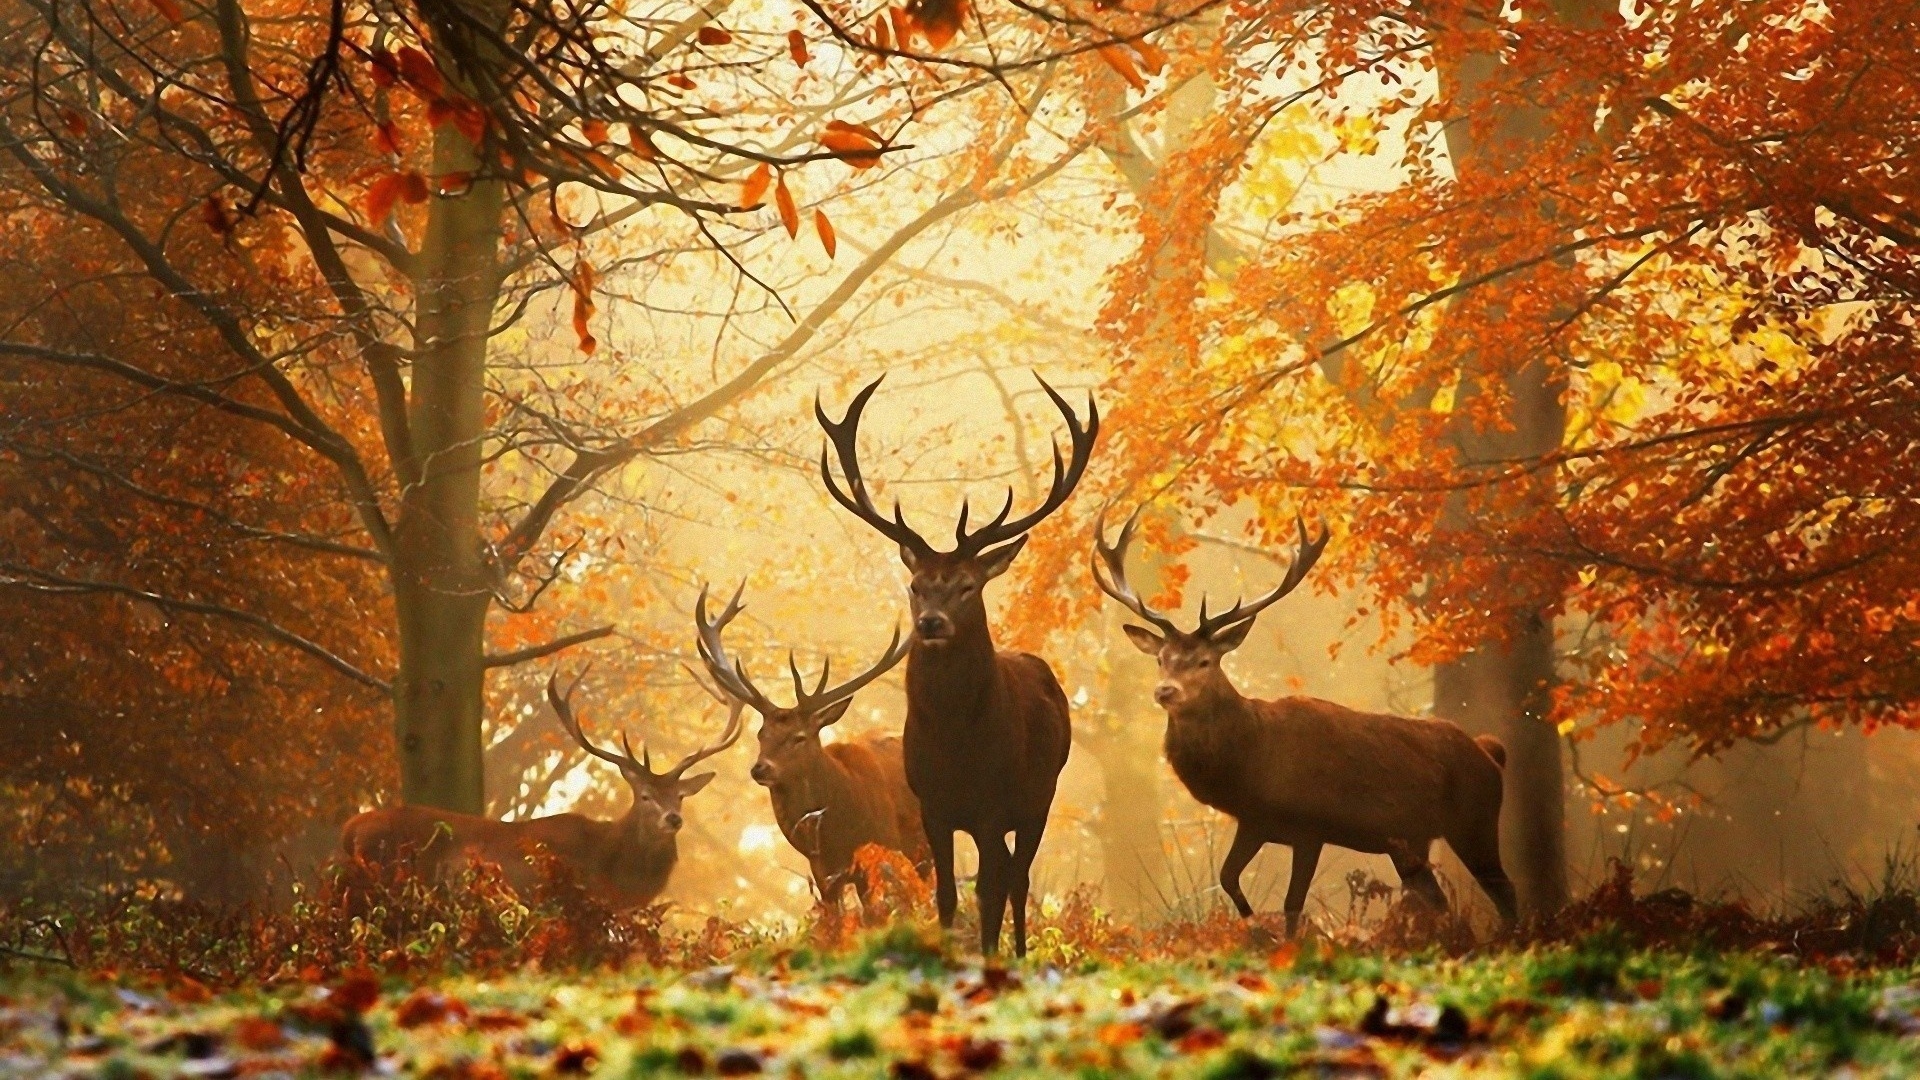 Download 1920x1080 HD Wallpaper deer forest autumn morning